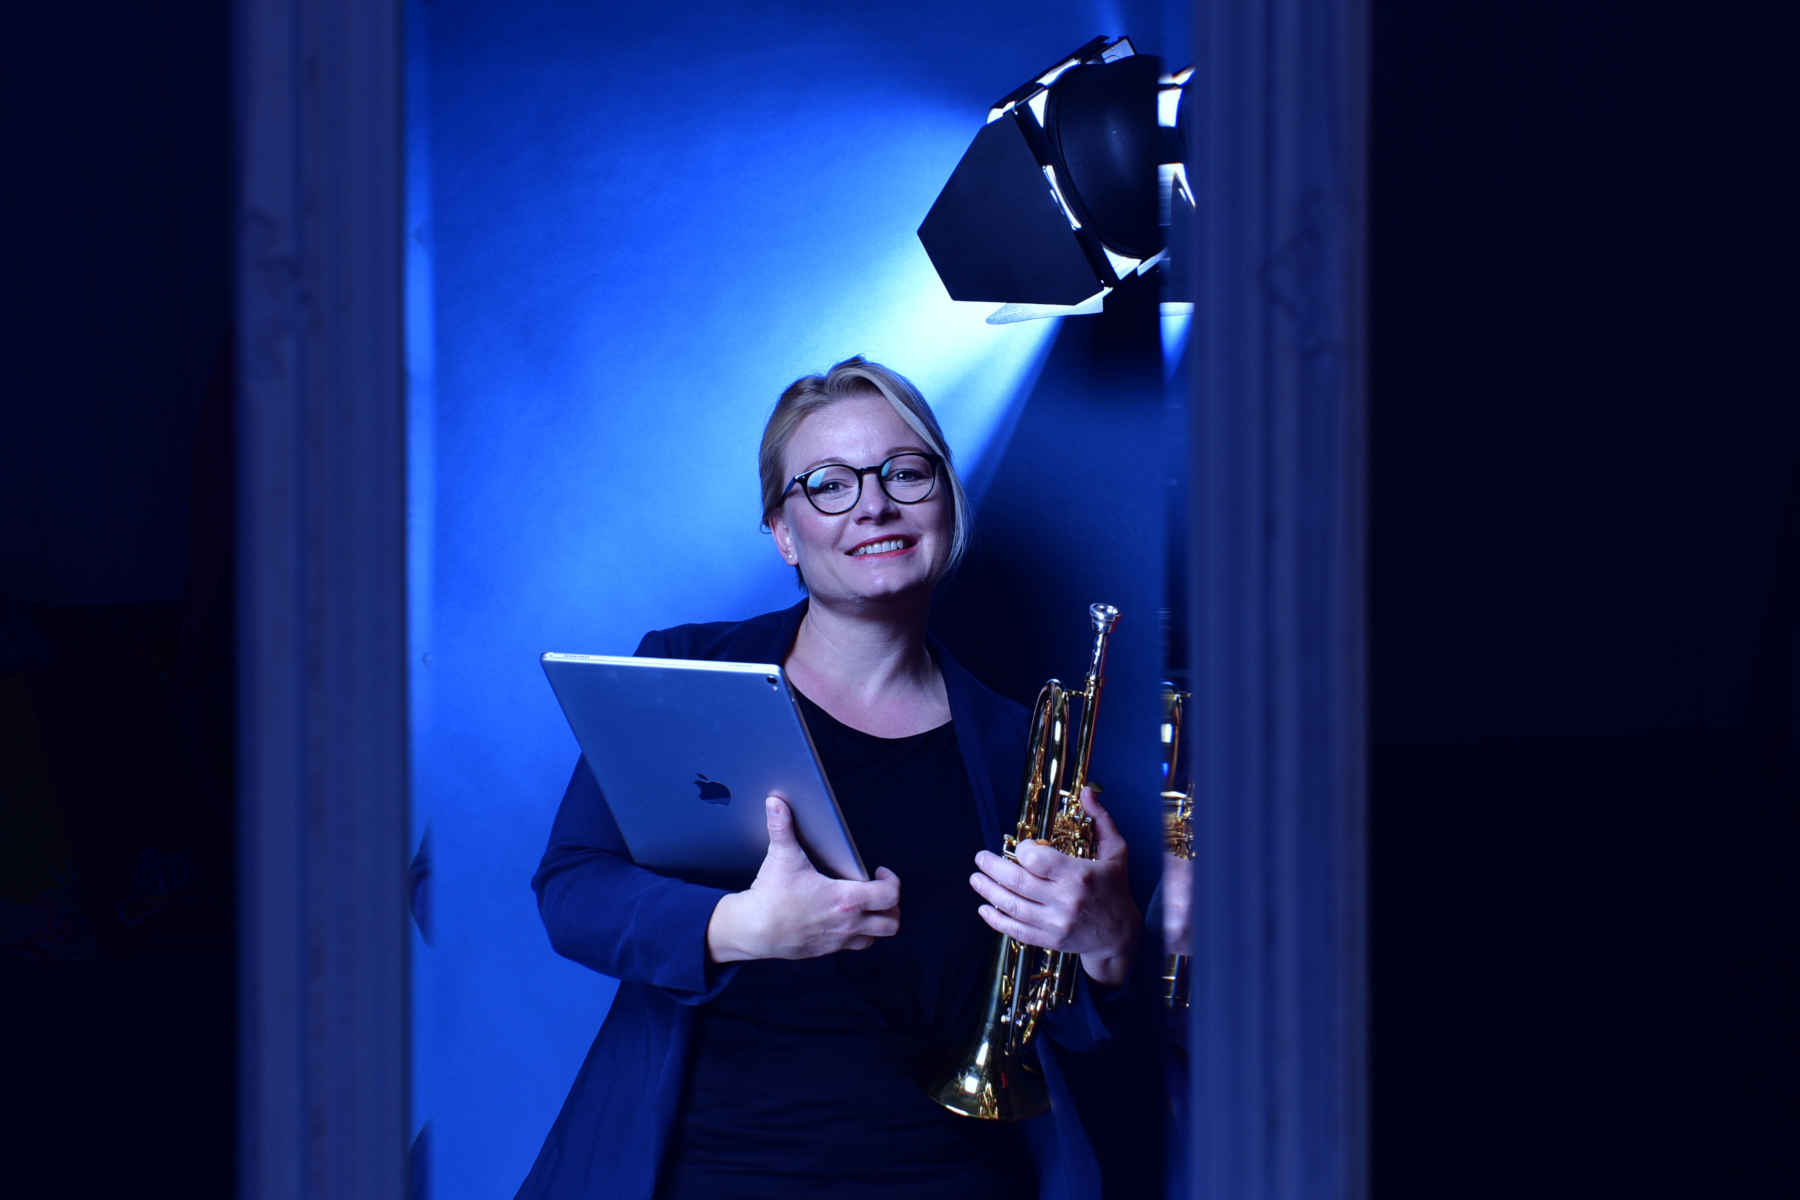 Trompete lernen – 20 Fragen an Kristin Thielemann